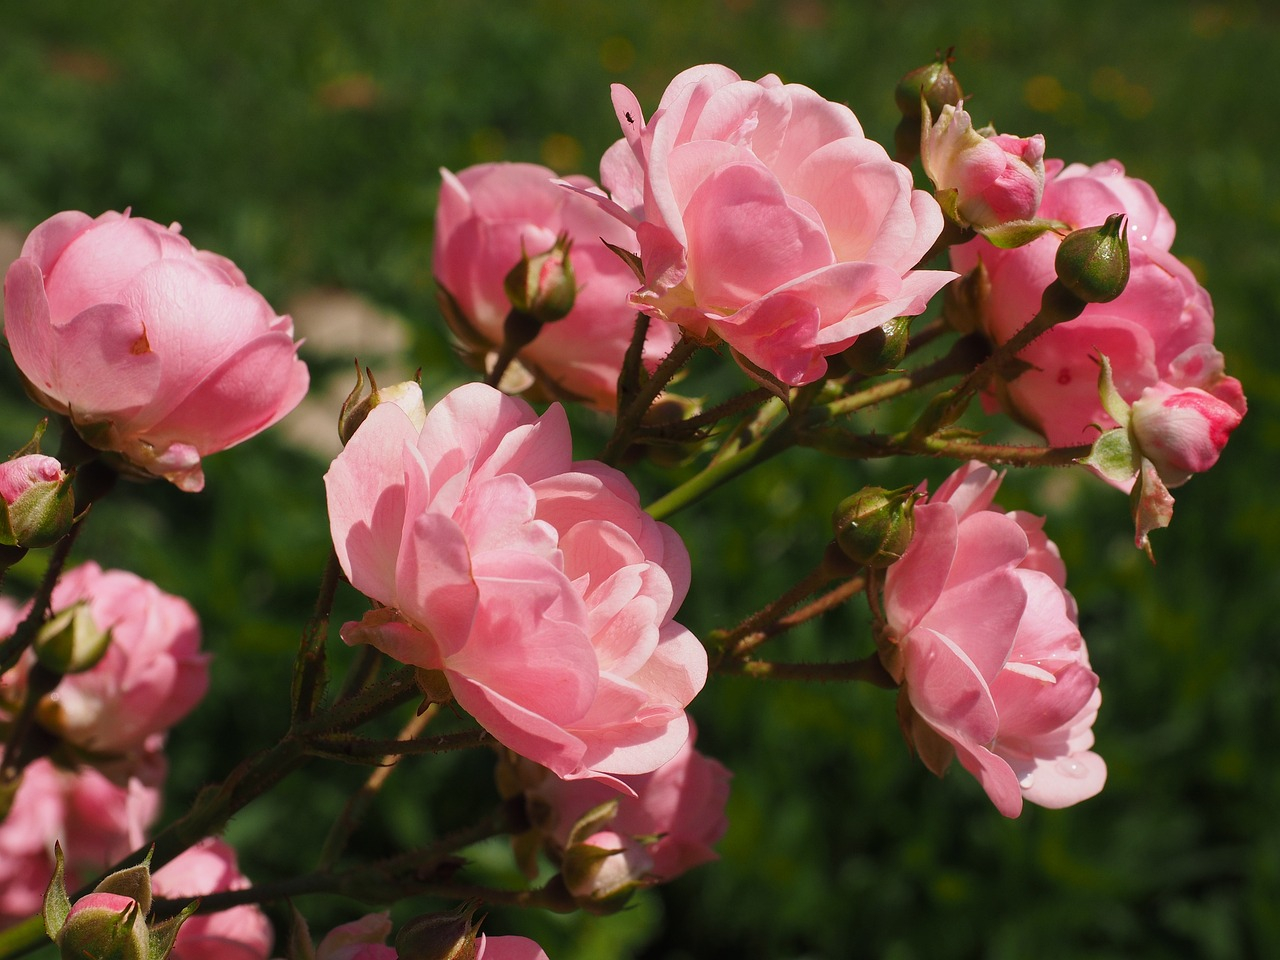 Acostumbrar rotar tus rosas para que reciban sol de forma uniforme y broten en forma de arbusto.